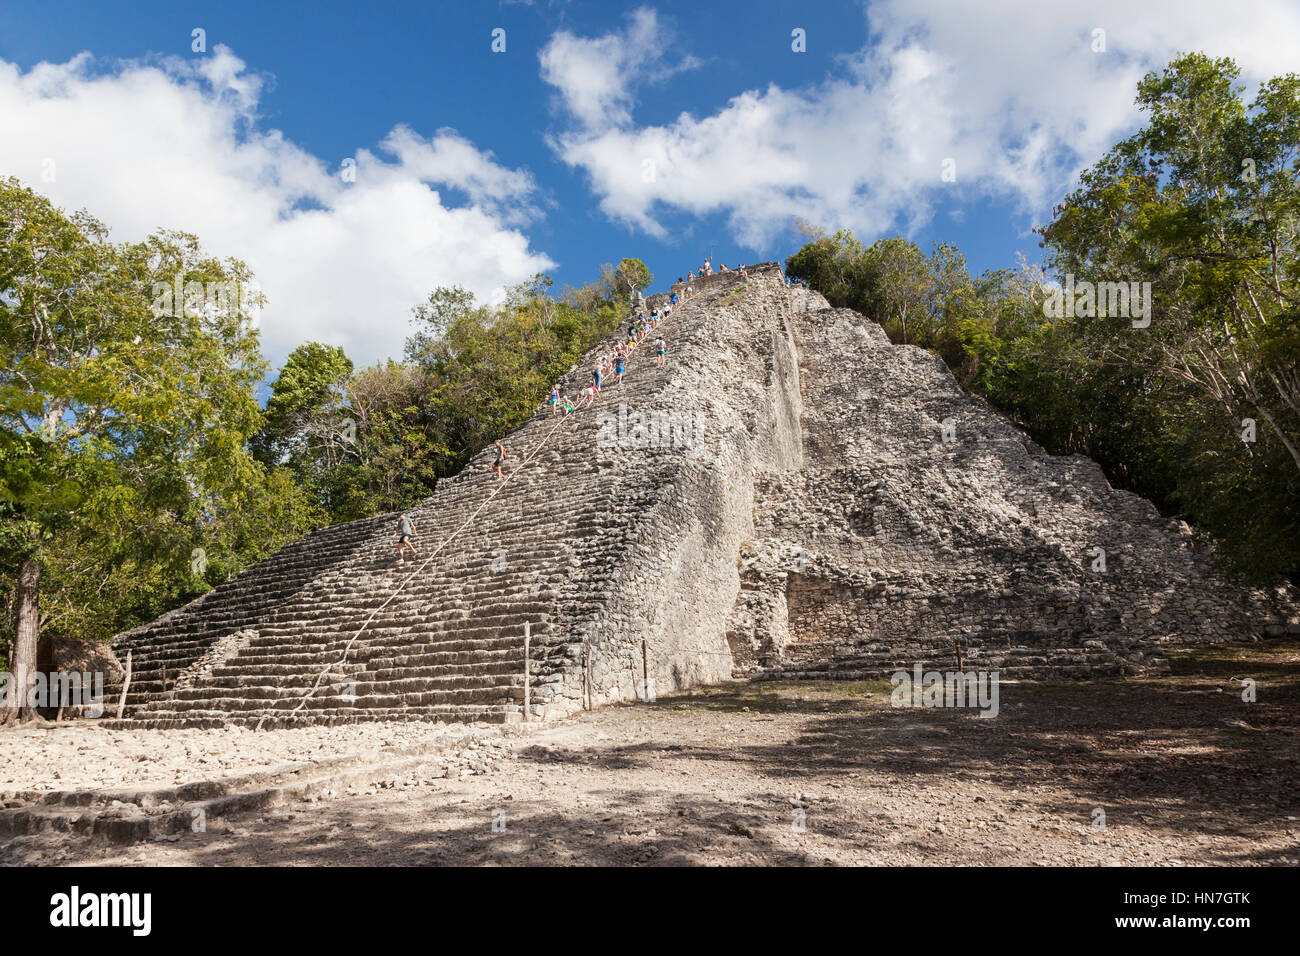 Escalade touristique Nohoch Mul le temple pyramide, Coba, civilisation ancienne maya, péninsule du Yucatan, état mexicain de Quintana Roo, Mexique Banque D'Images